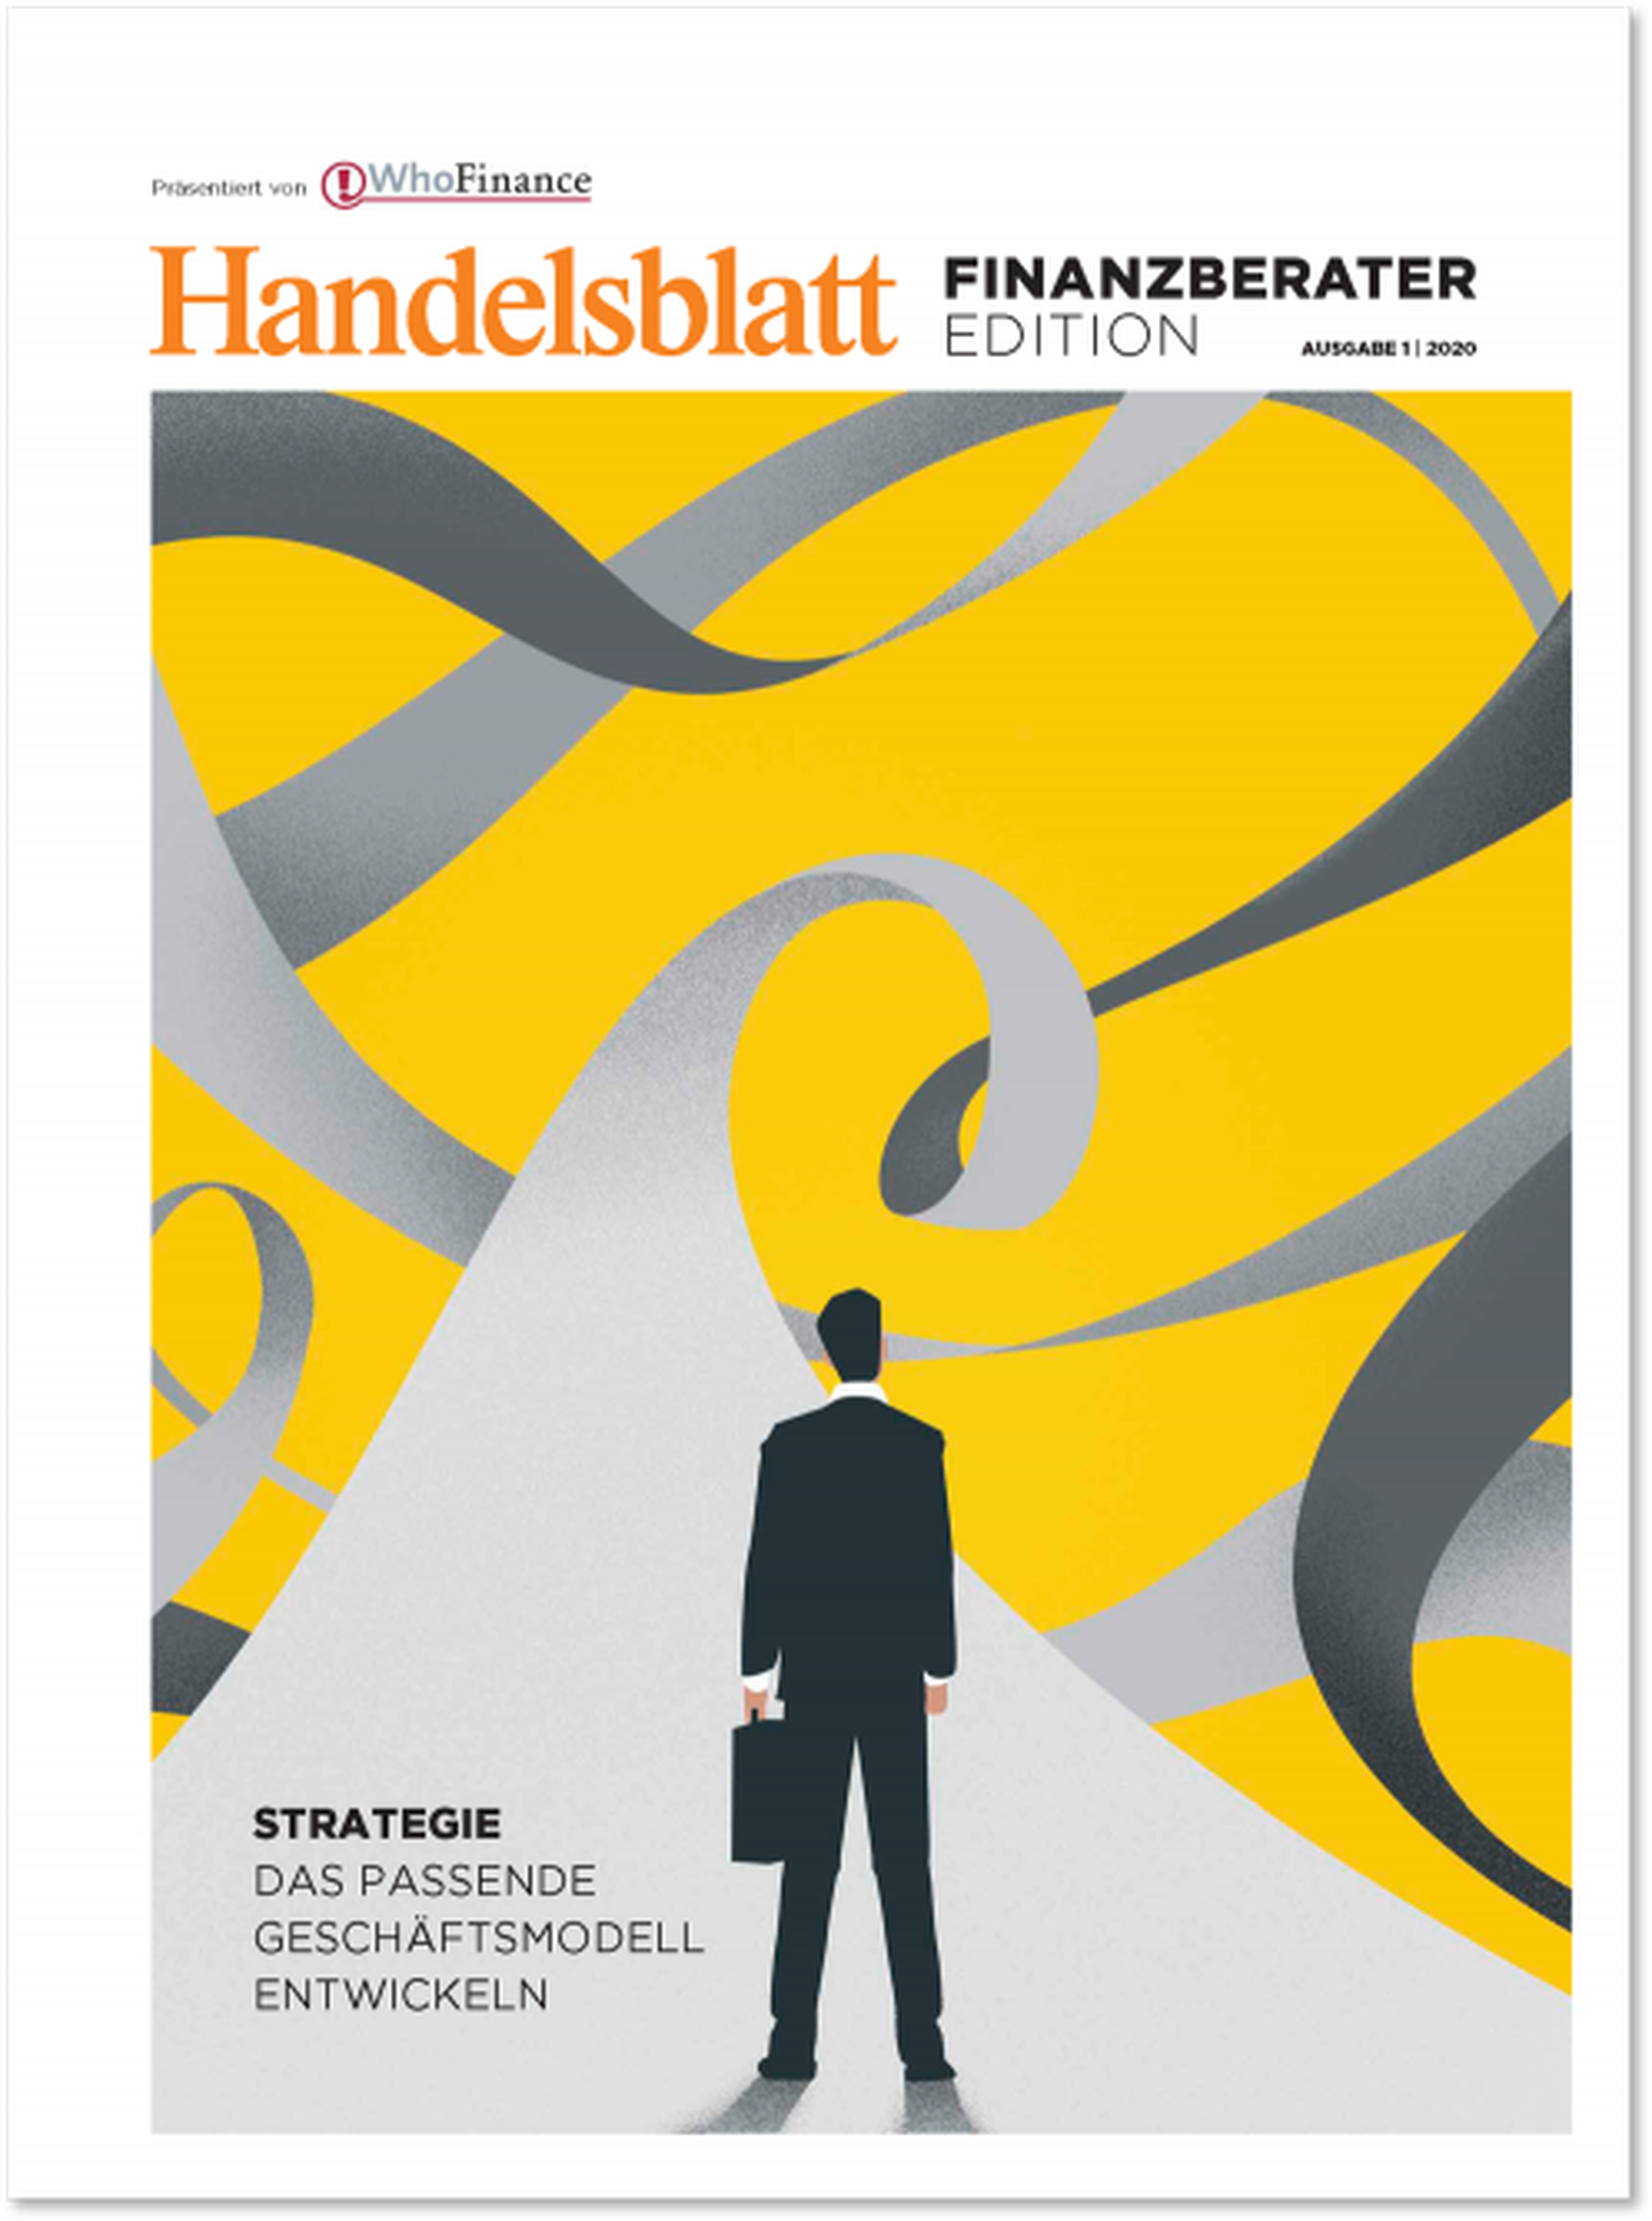 Handelsblatt Finanzberater-Edition-4865f962.png